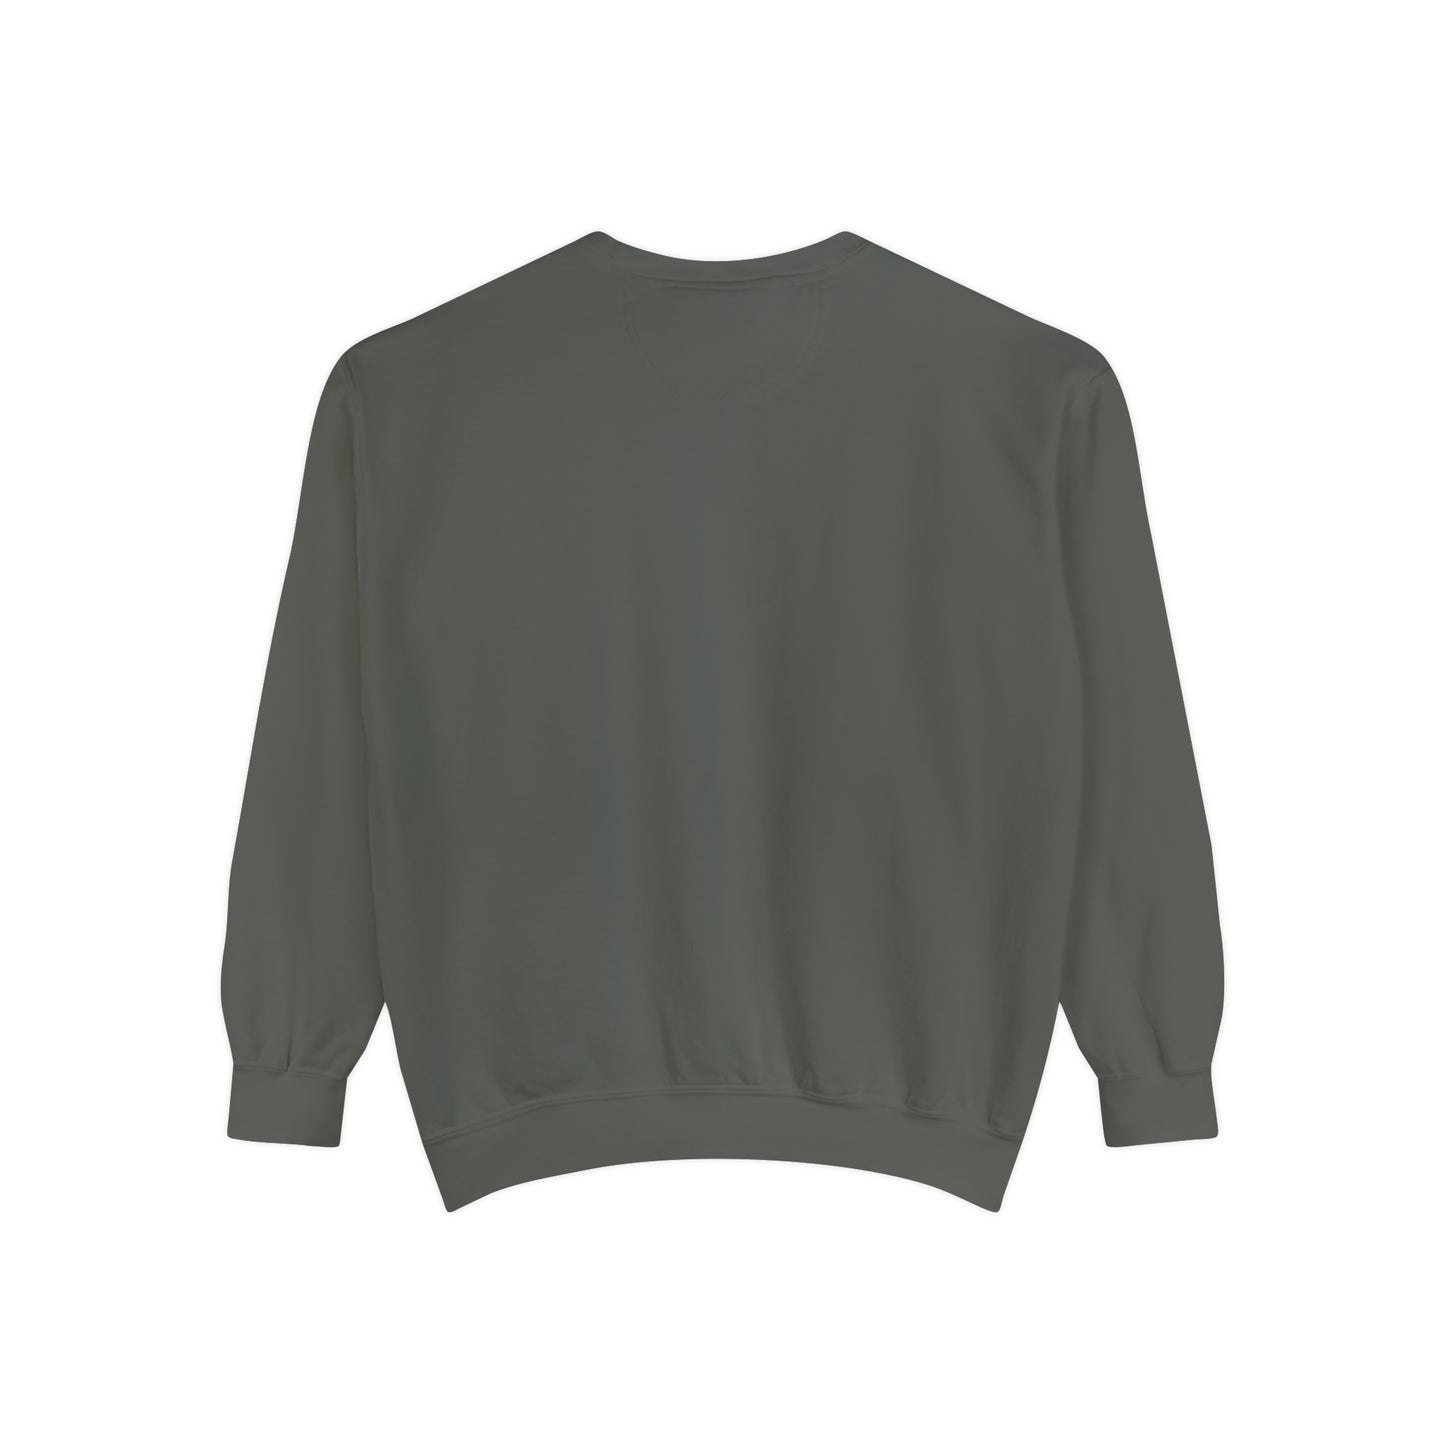 Let's Boogie Sweatshirt — Unisex